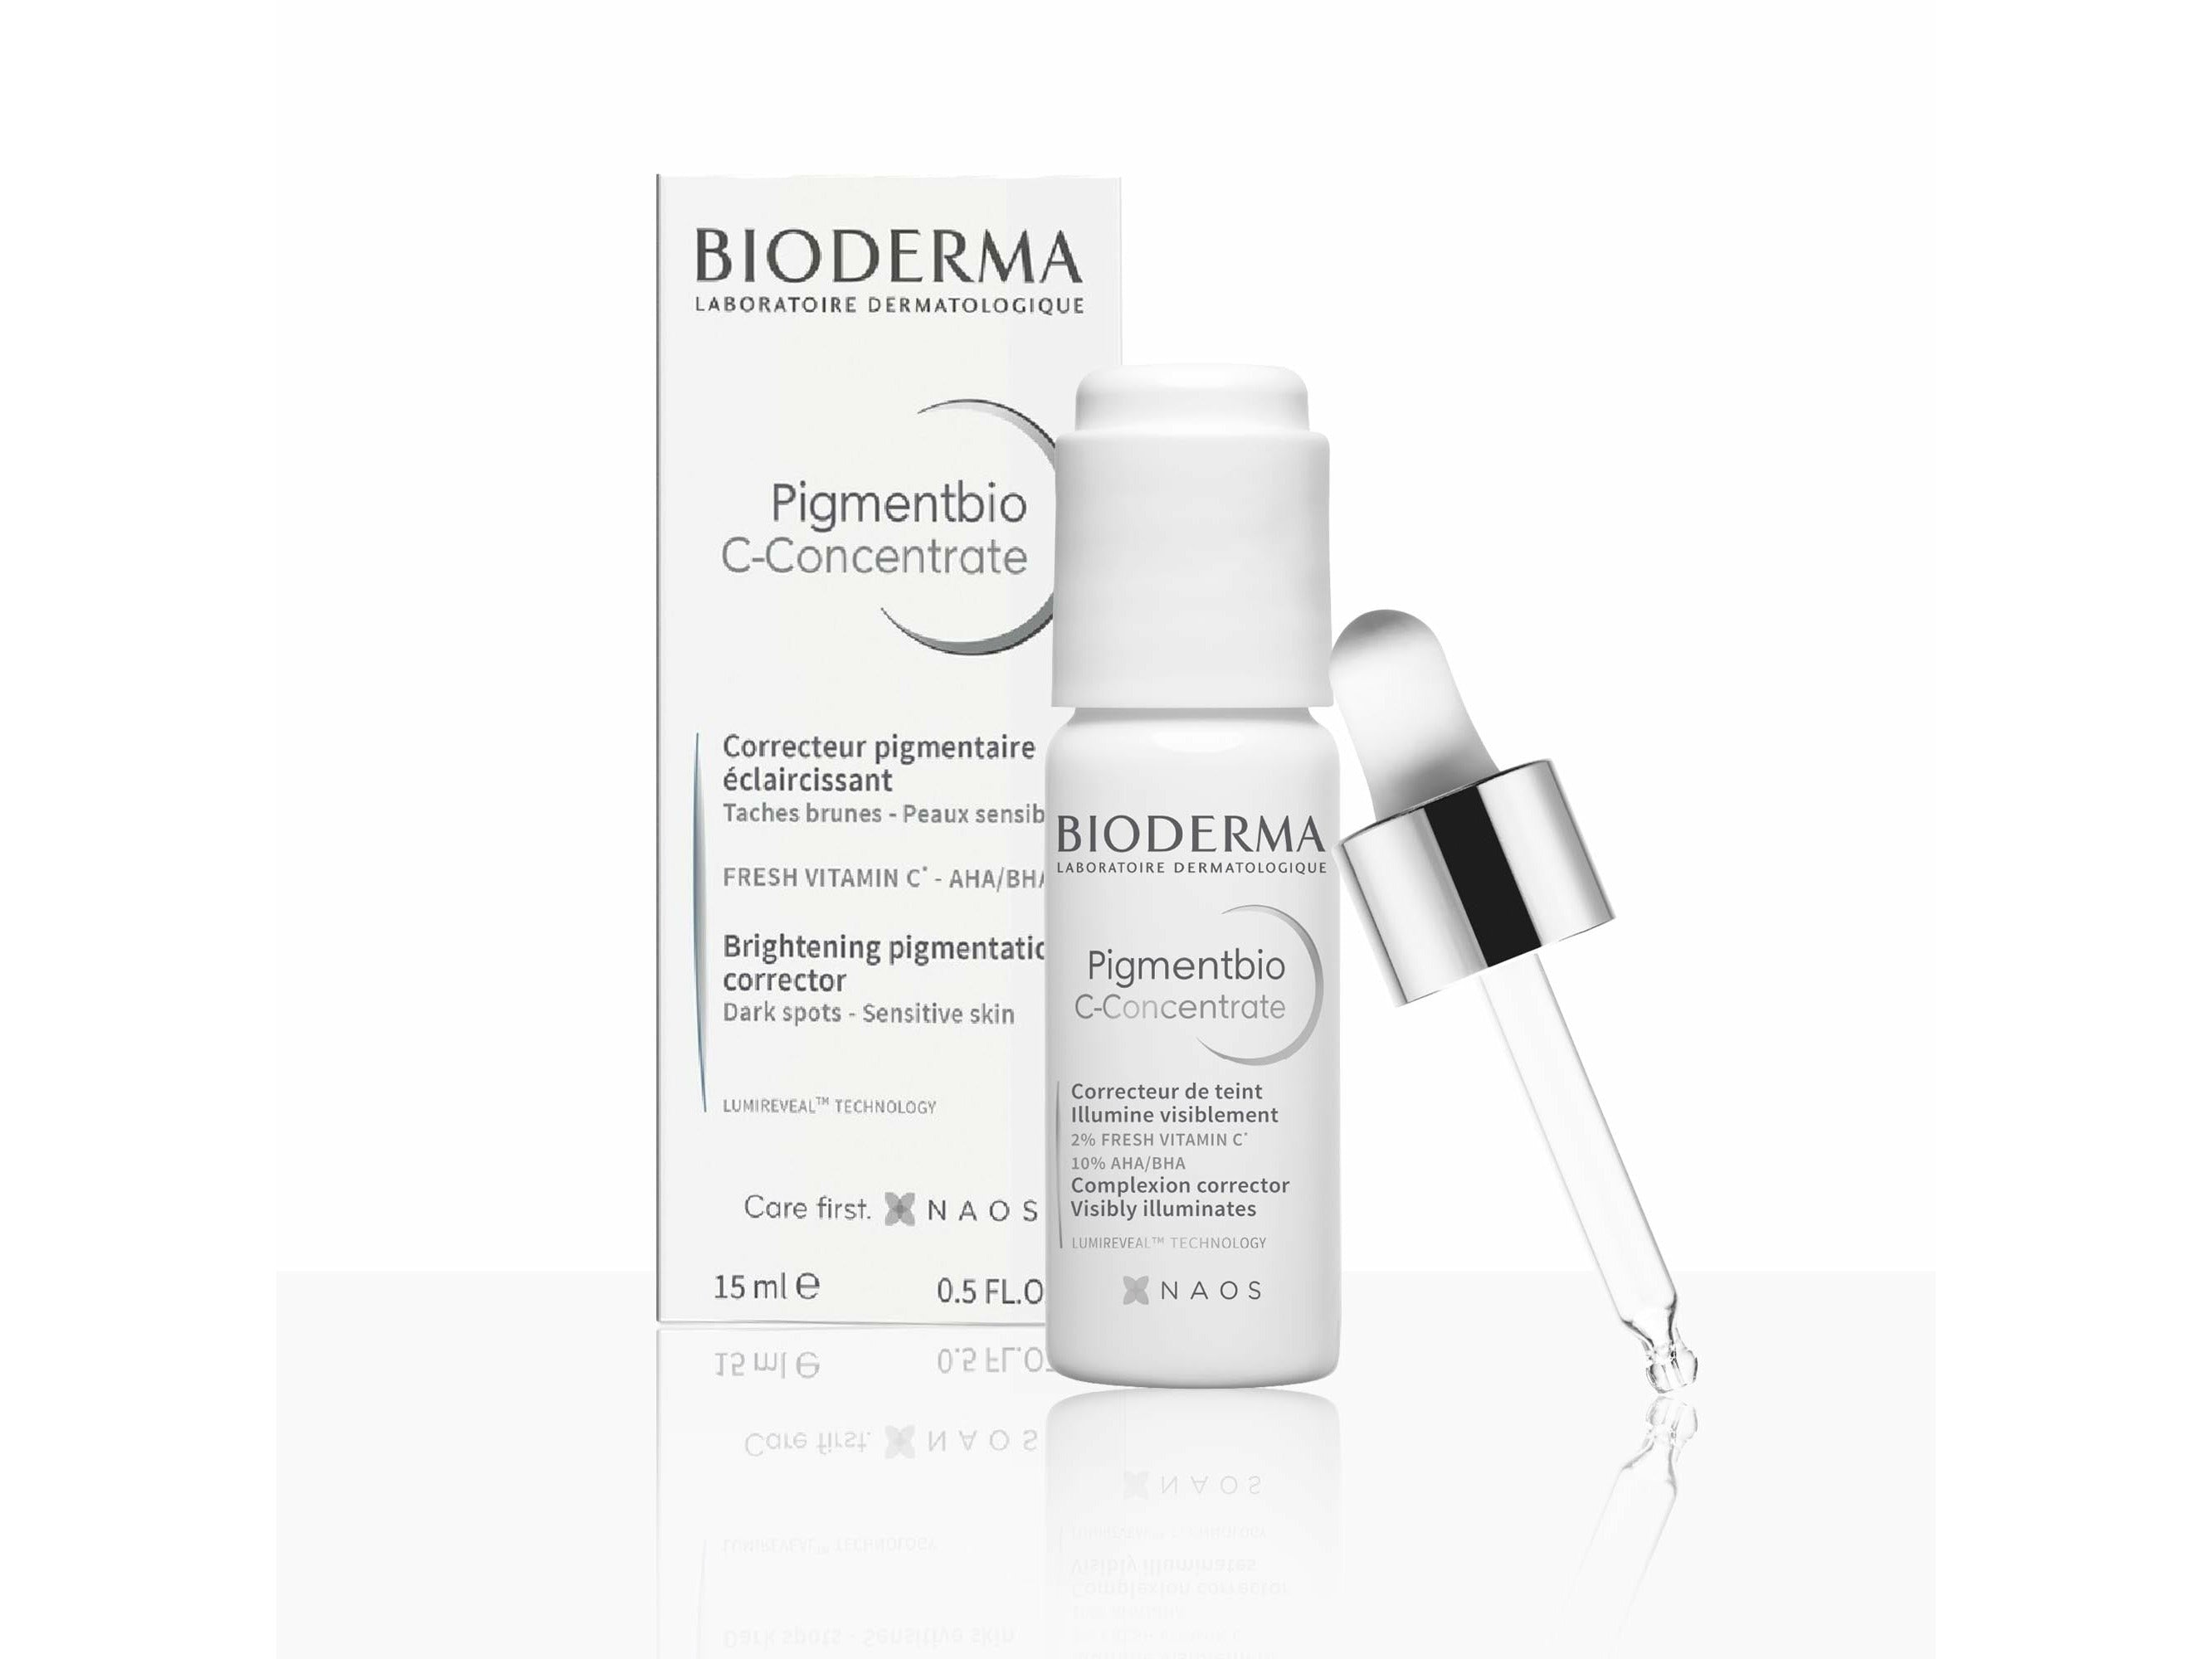 Buy Bioderma Pigmentbio C-Concentrate Online